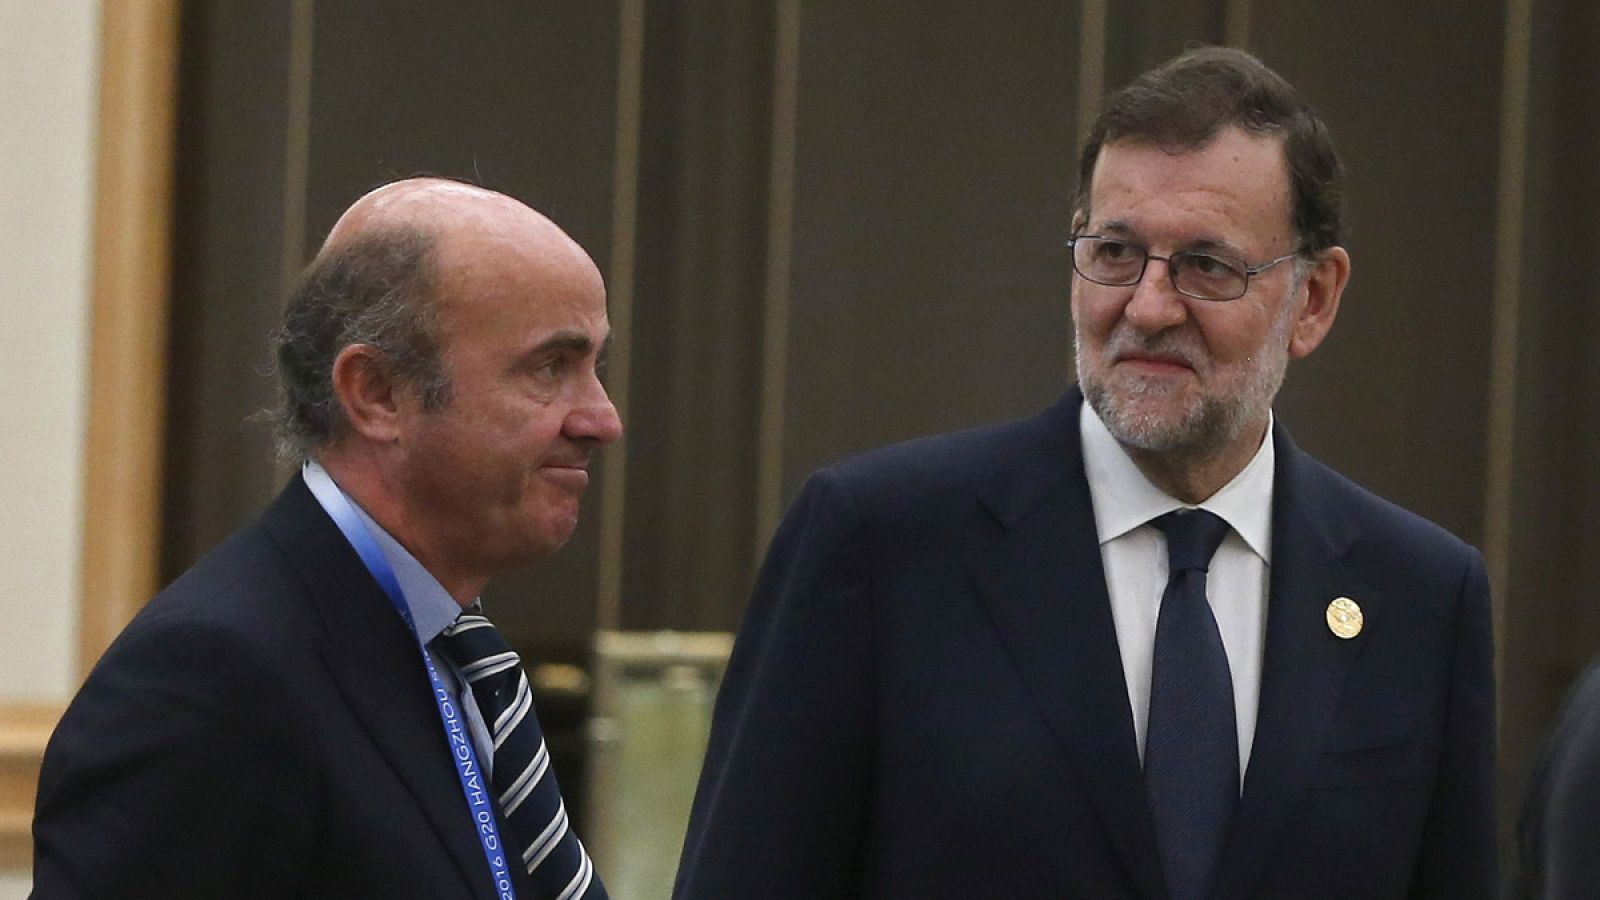 El ministro de Economía en funciones, Luis de Guindos, junto al presidente del Gobierno en funciones, Mariano Rajoy, en la cumbre del G20